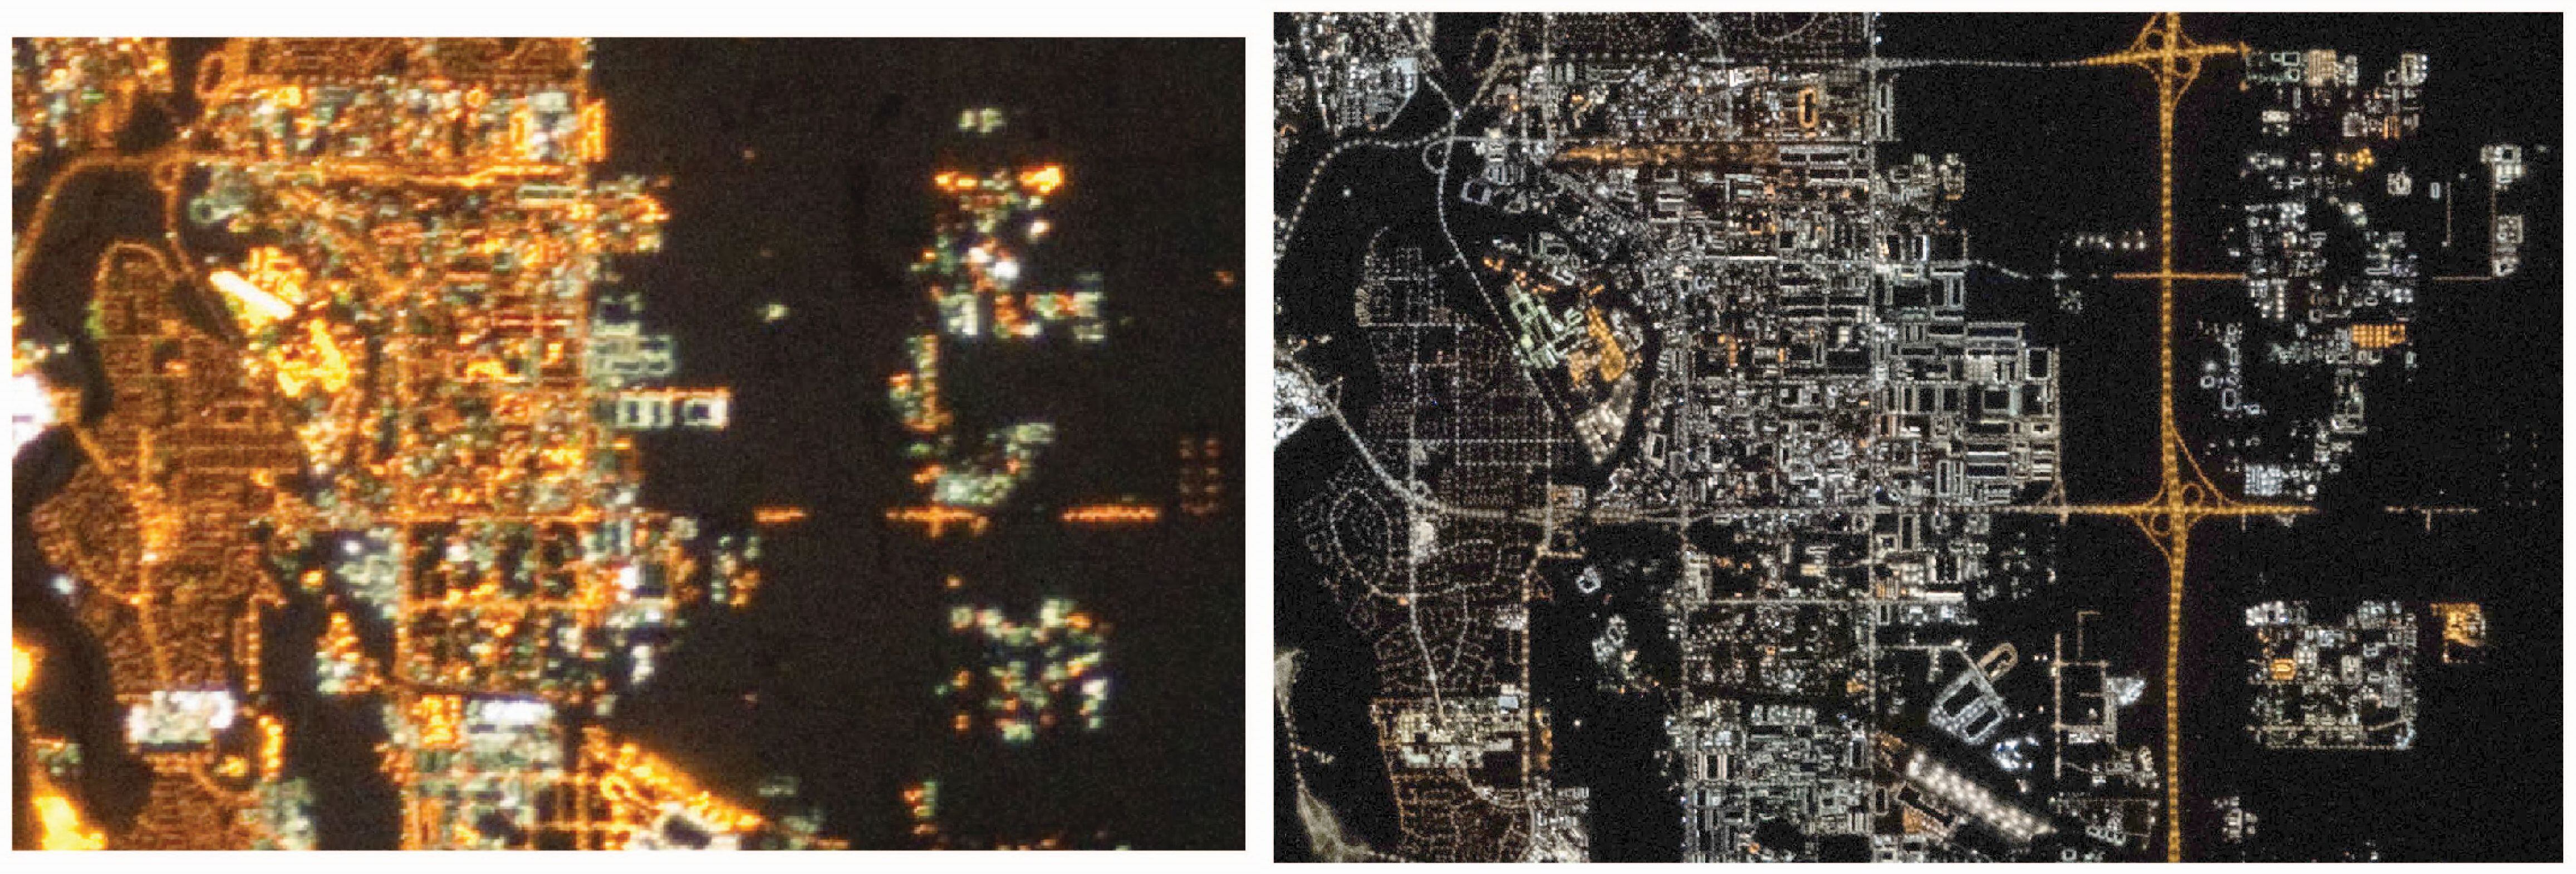 A la izquierda, imagen del este de Calgary (Canadá) tomada por los astronautas de la Estación Espacial Internacional en 2010. A la derecha, la misma zona en 2021. El cambio del ámbar al azul se debe al despliegue de la iluminación exterior con tecnología LED.